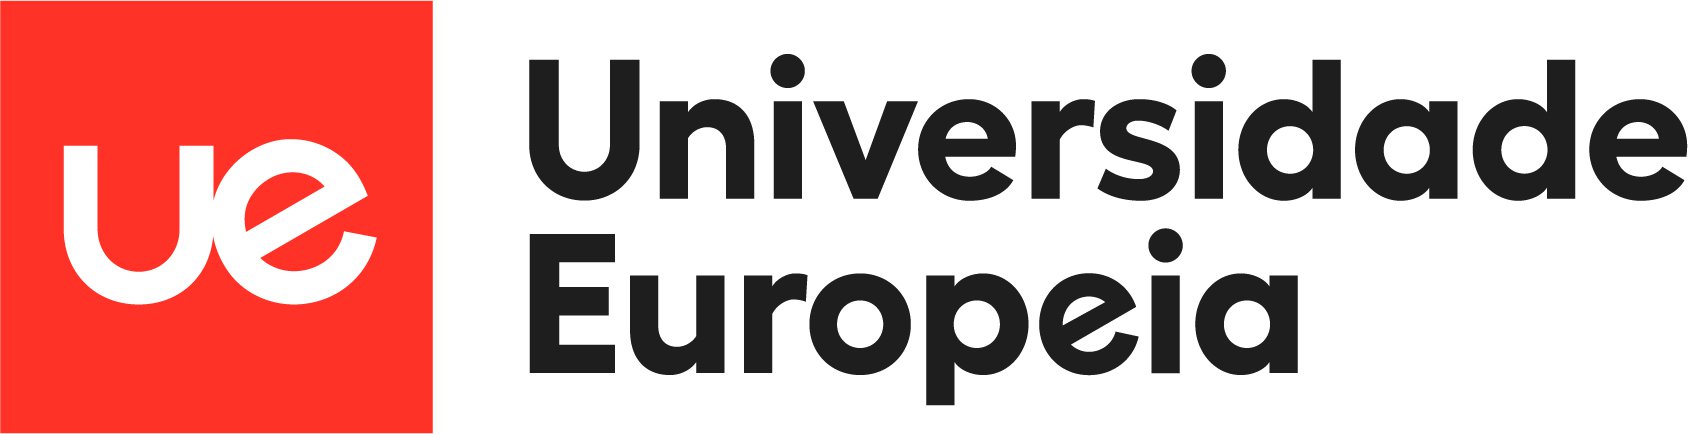 ue-logo-europeia.jpg